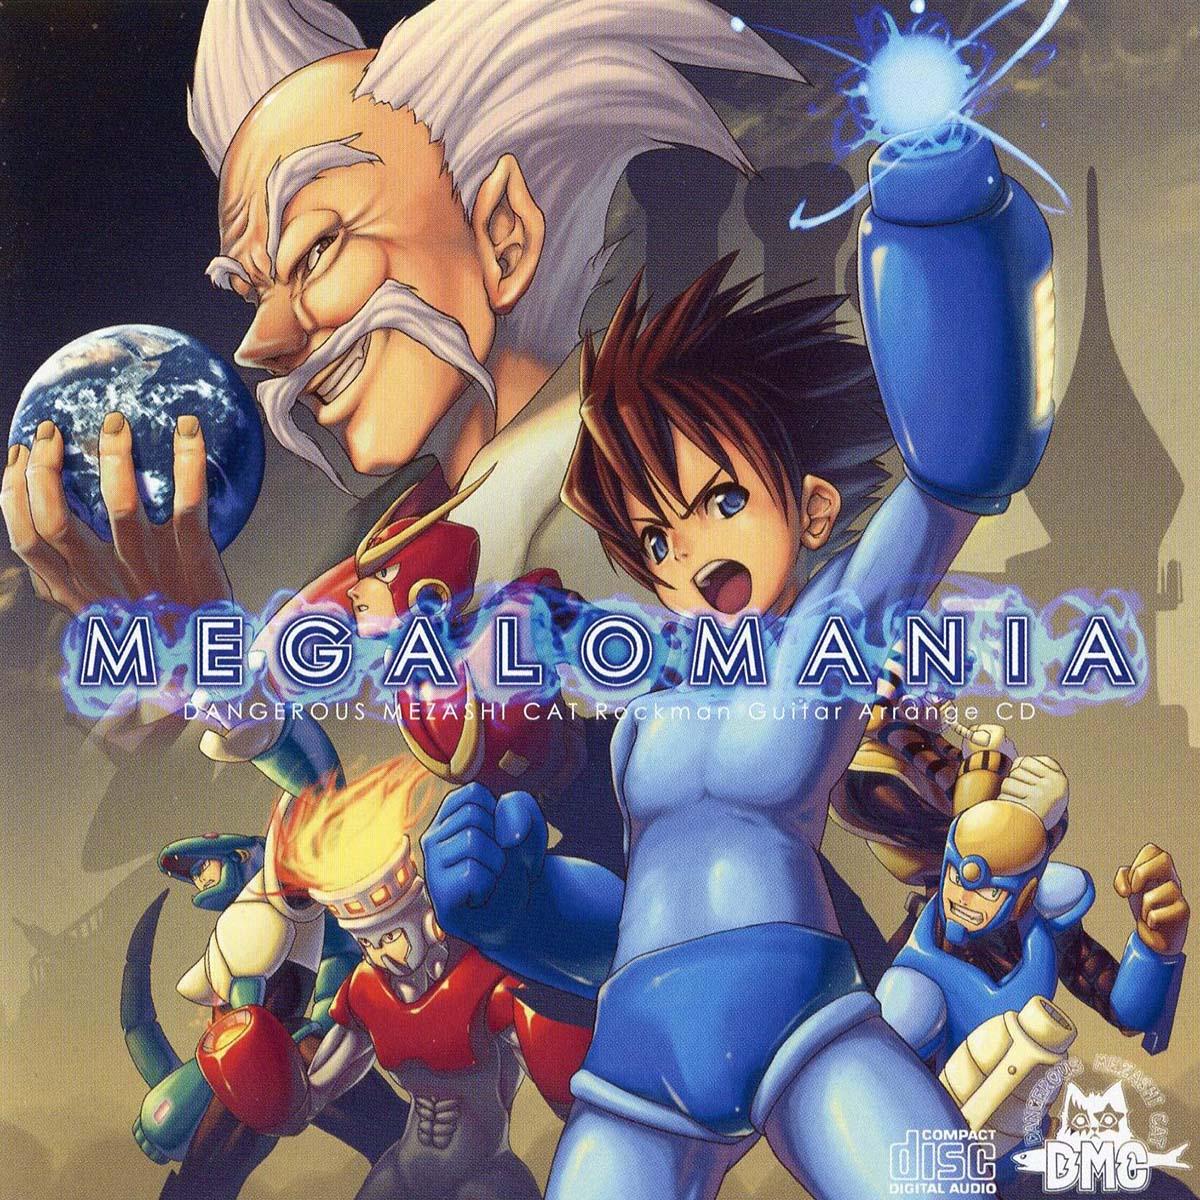 Megalomania - Dangerous Mezashi Cat Mega Man Guitar Arrange CD